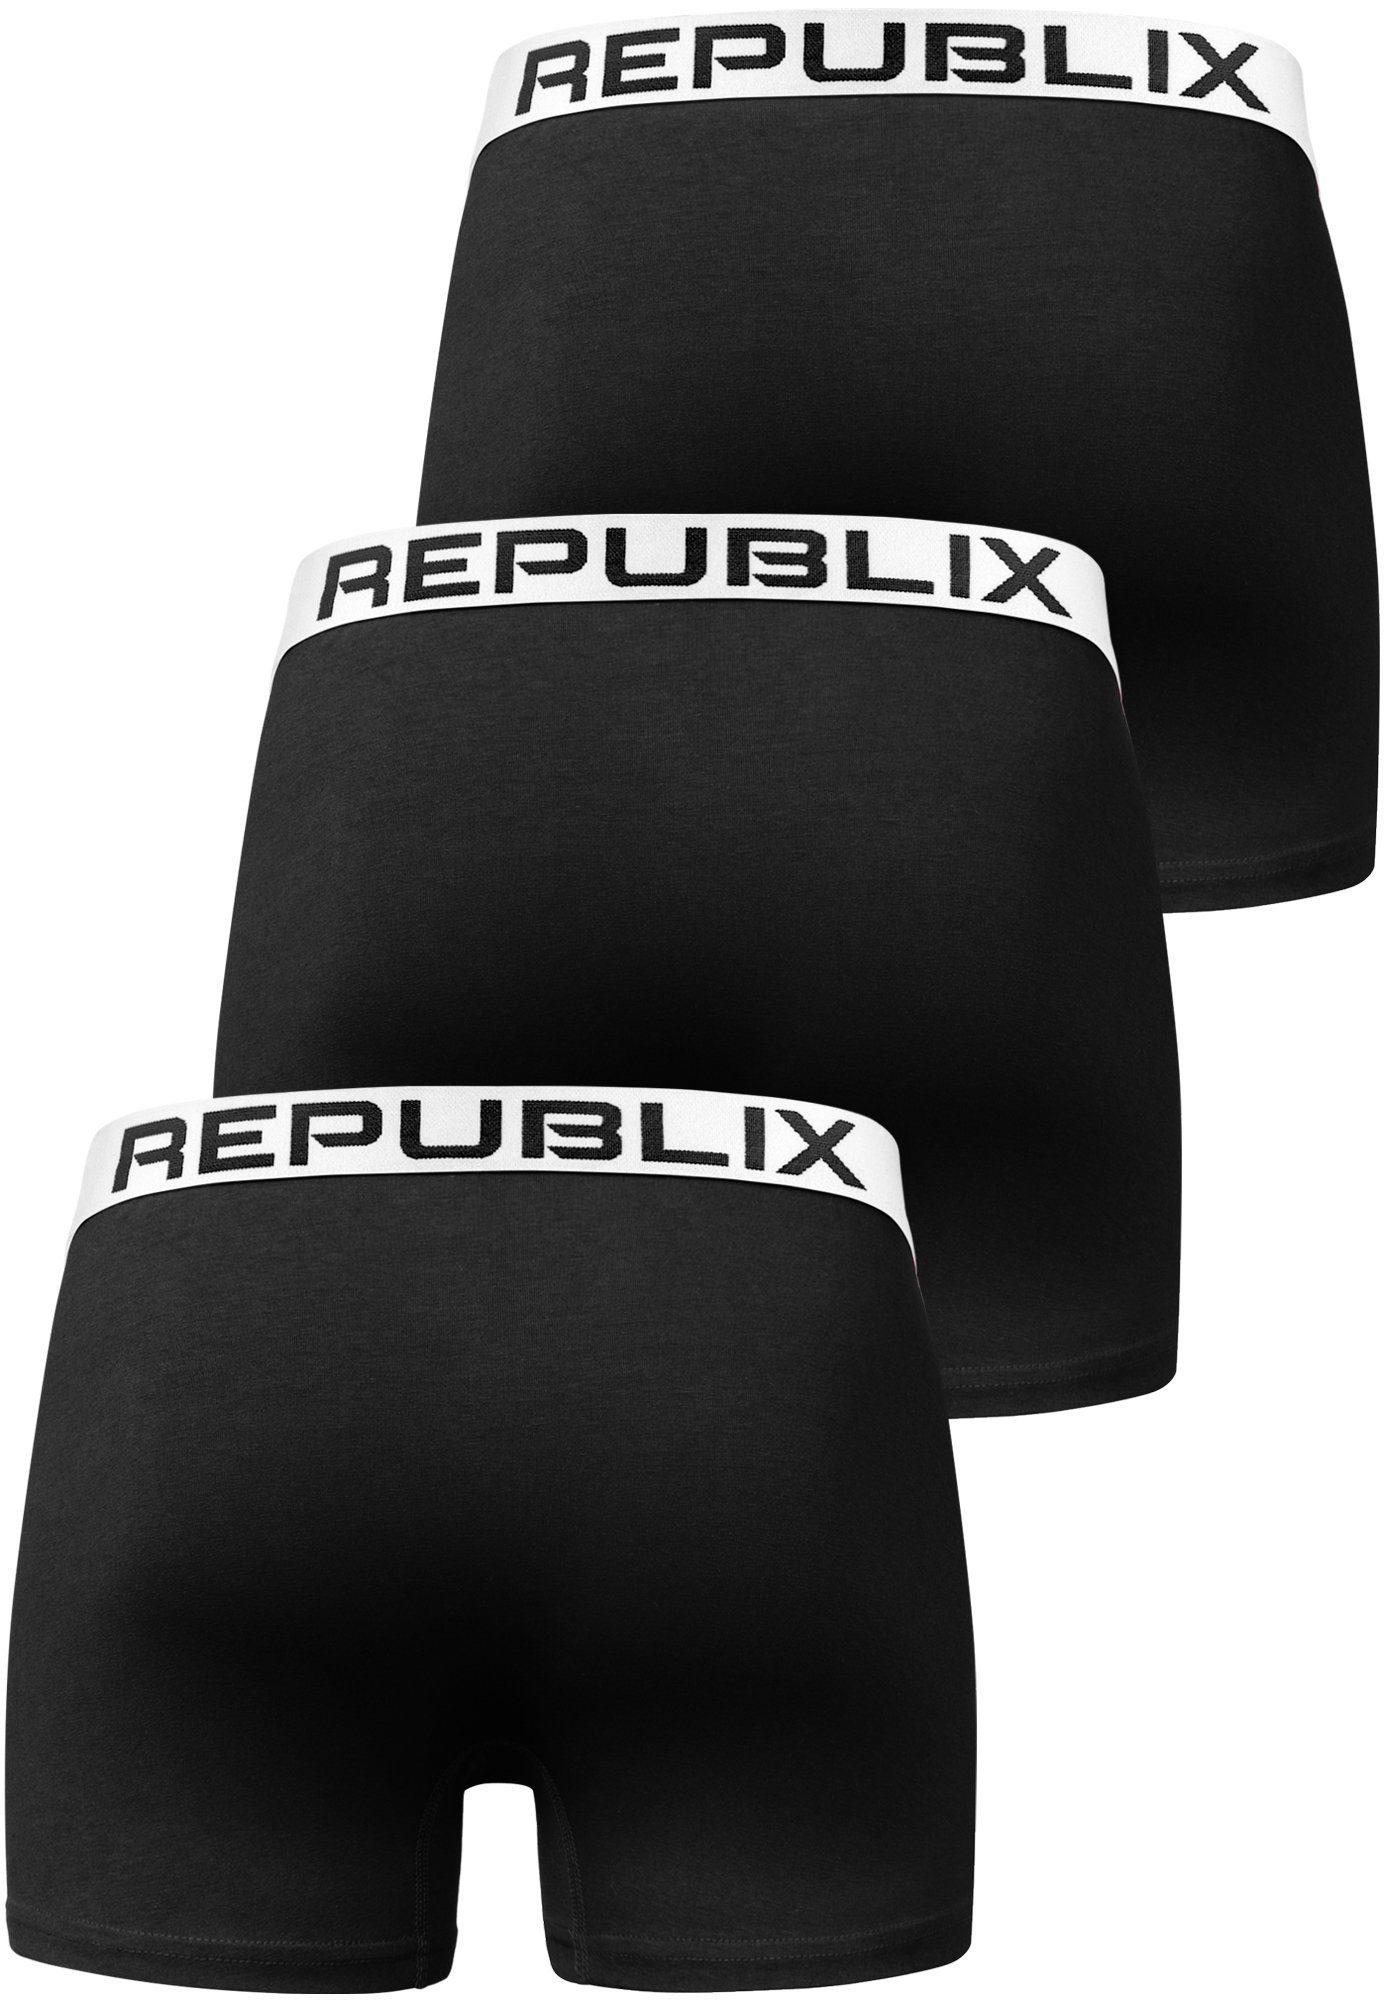 REPUBLIX DON Unterhose Baumwolle (3er-Pack) Boxershorts Unterwäsche Schwarz/Weiß Herren Männer